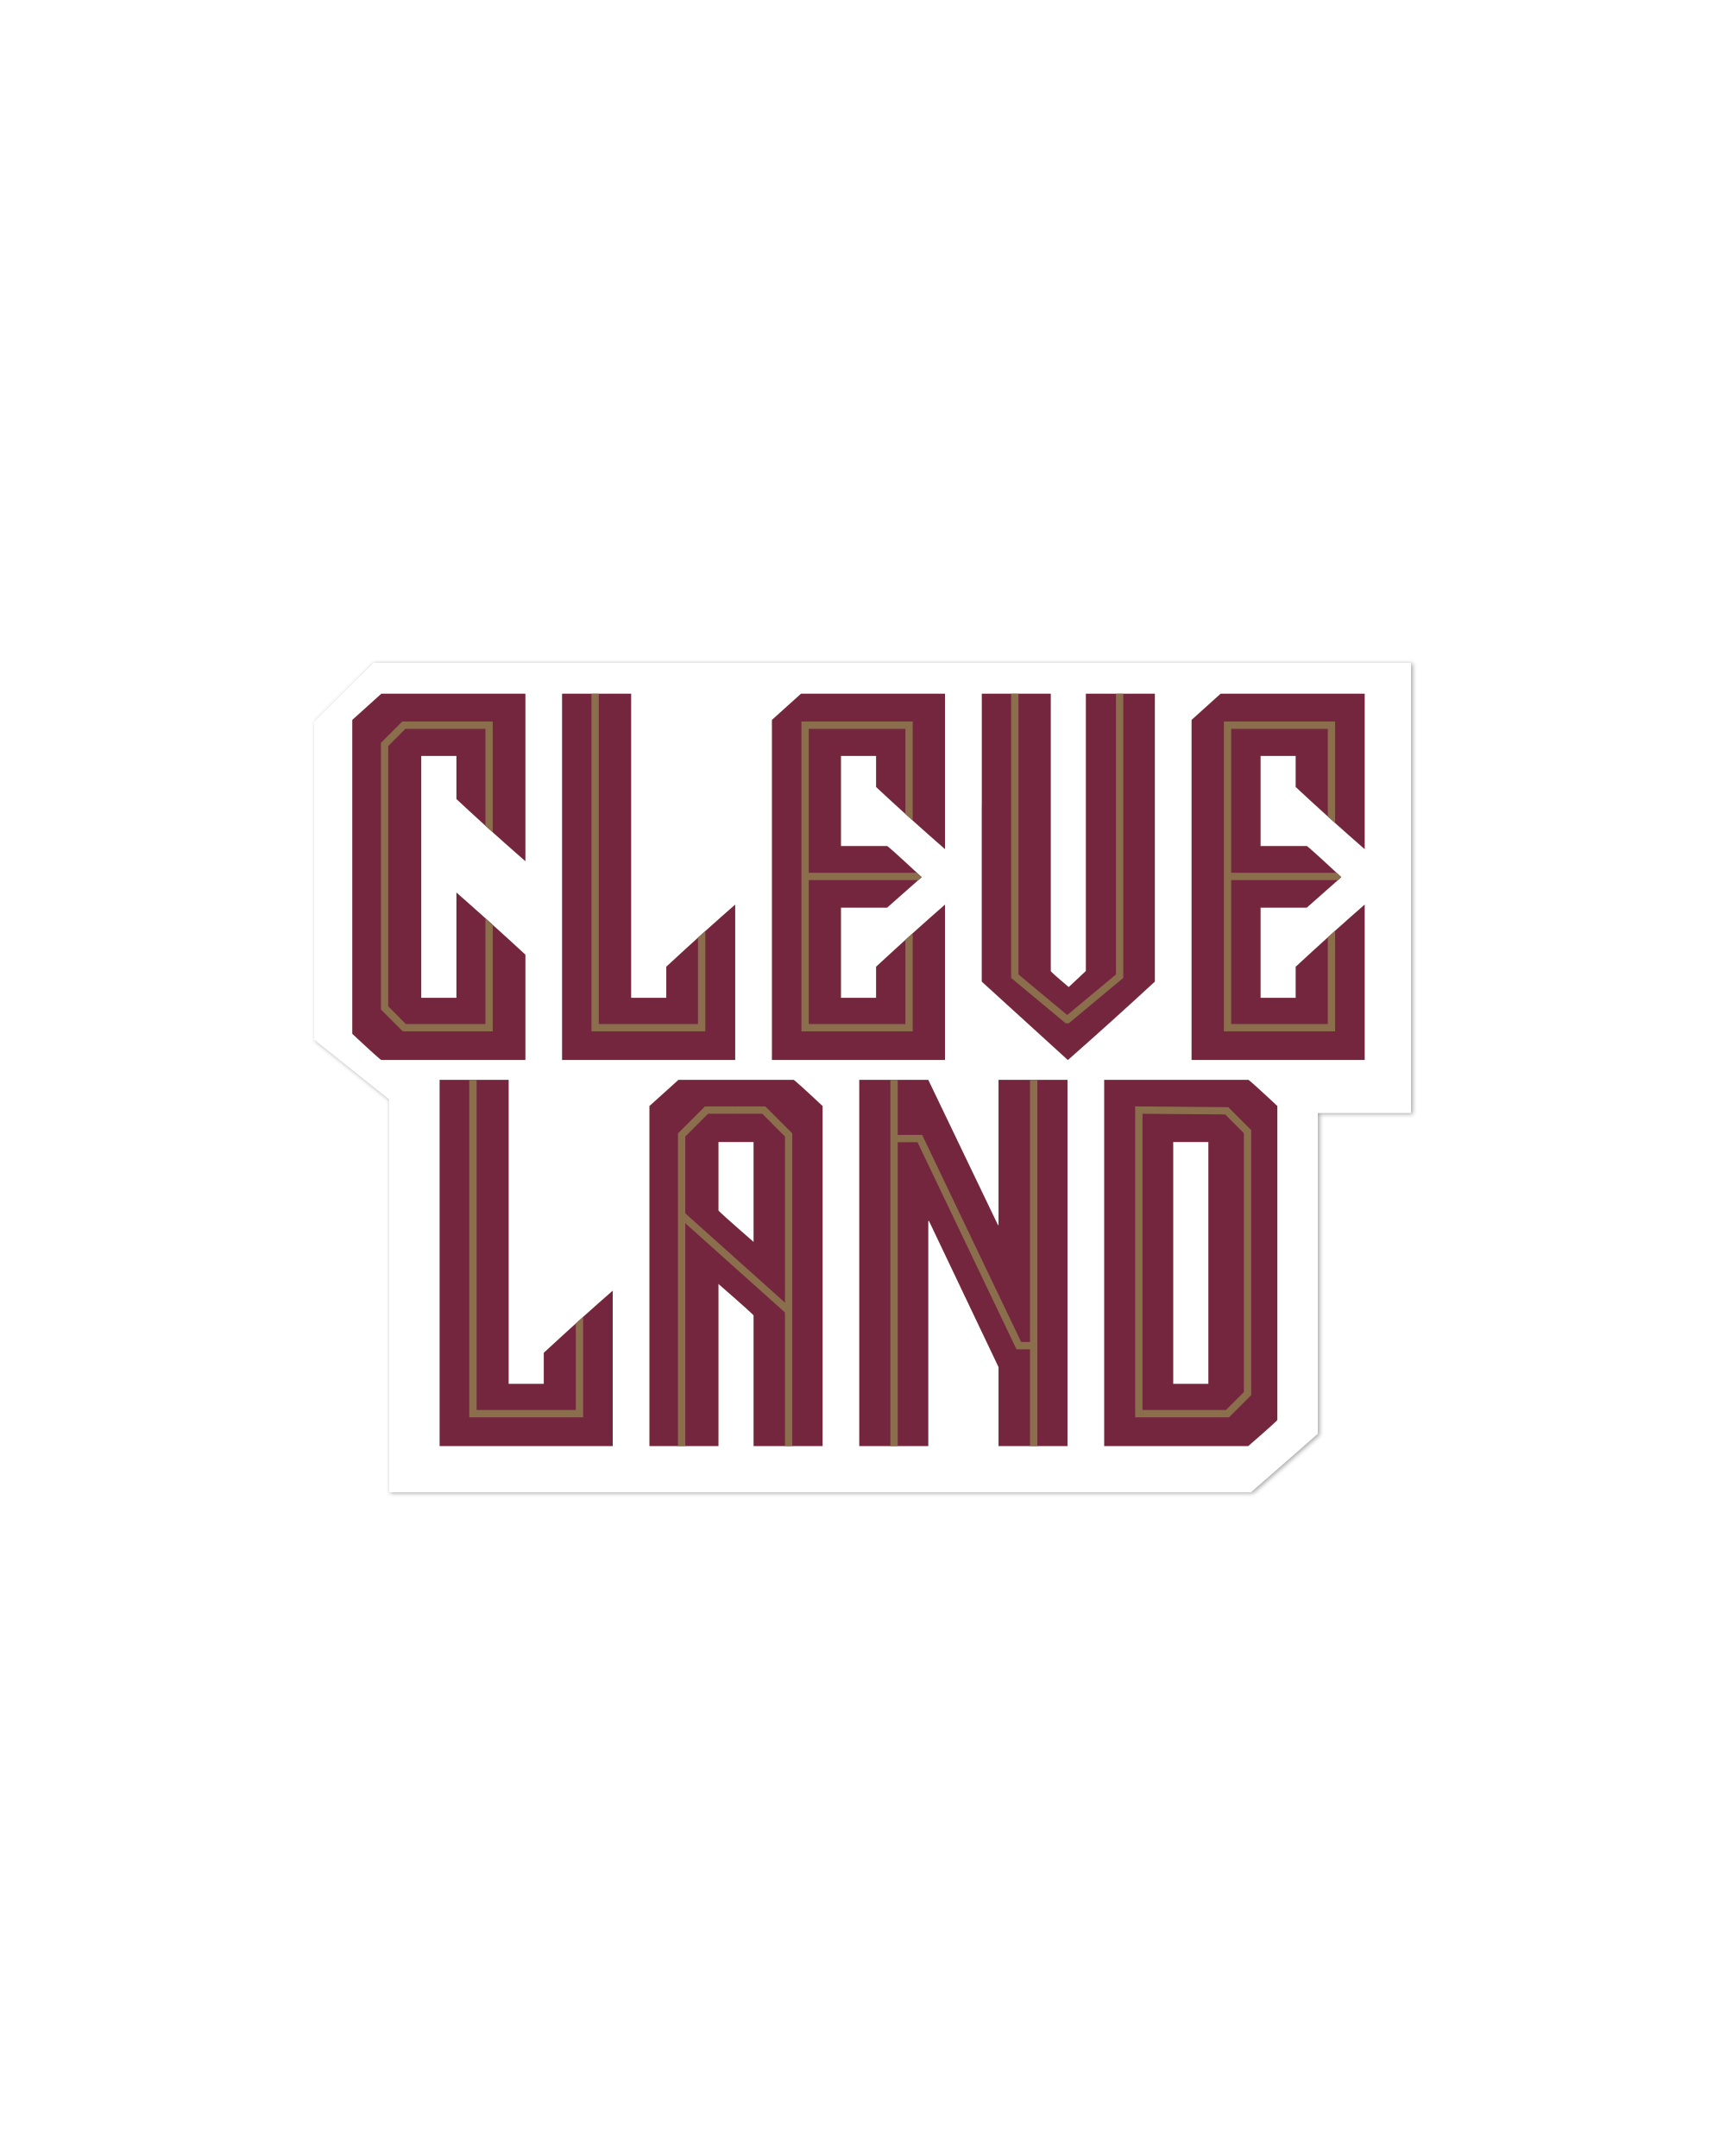 Cleve Land Maroon Sticker Sticker